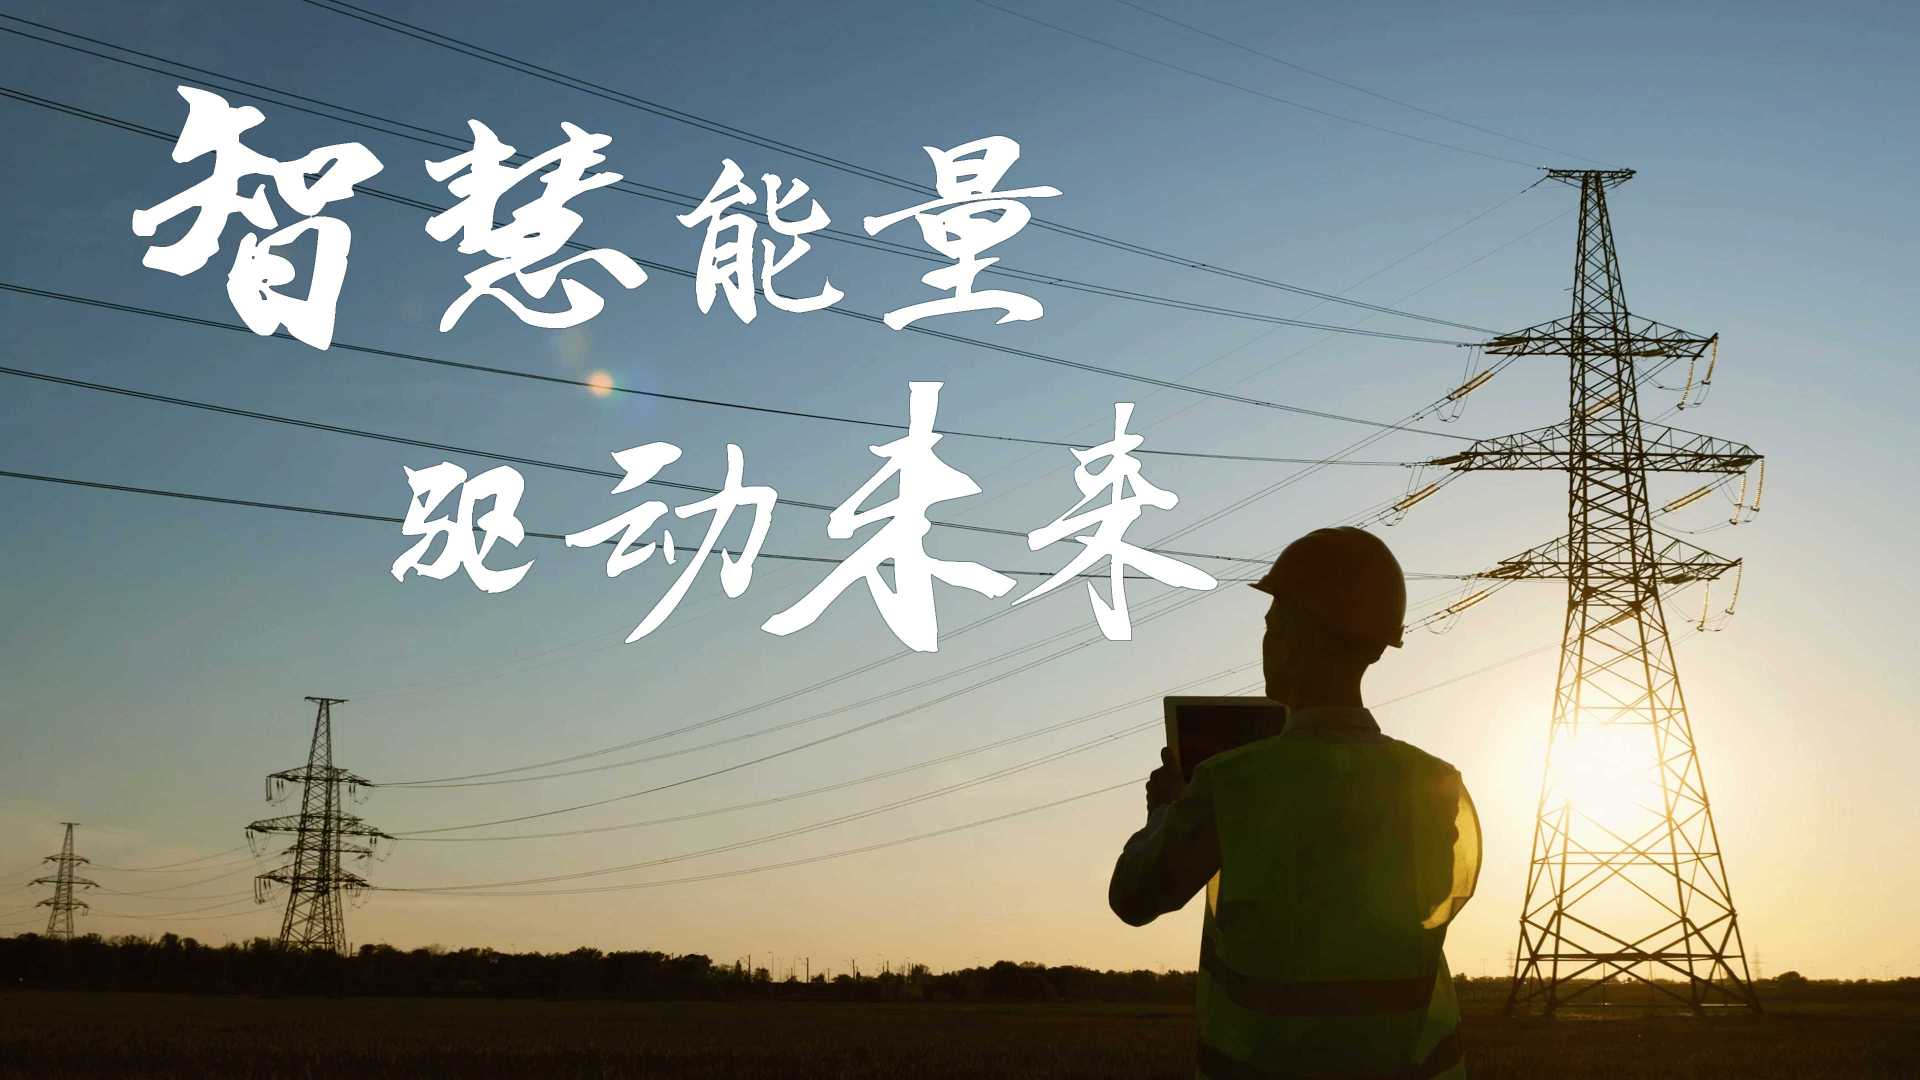 晨光电缆×光年映画丨线缆制造丨 电力设备丨智能制造电气企业IPO宣传片